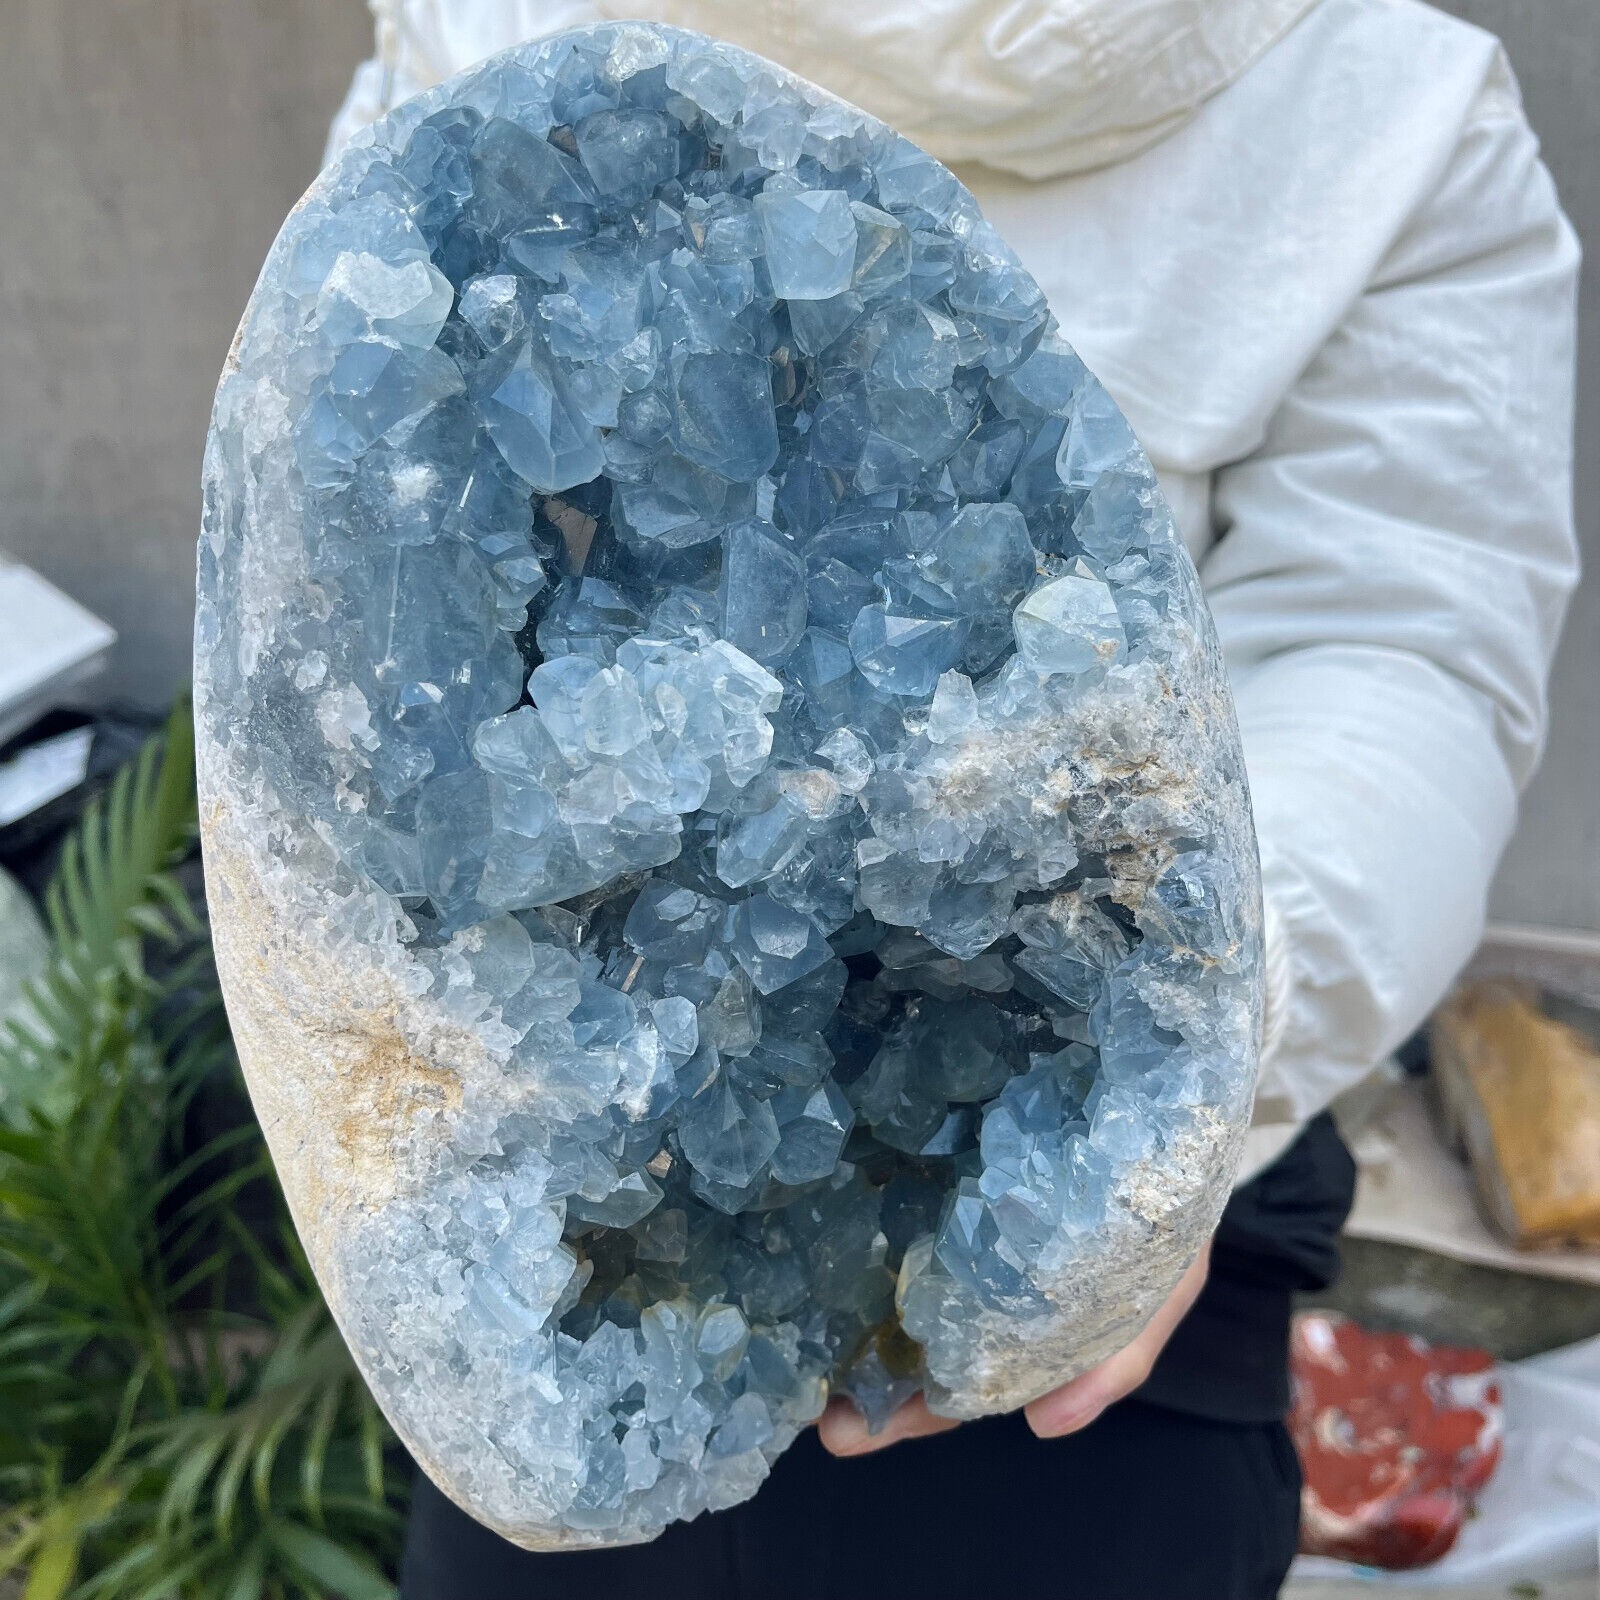 24lb Natural Blue Celestite Geode Quartz Crystal Mineral Specimen Healing